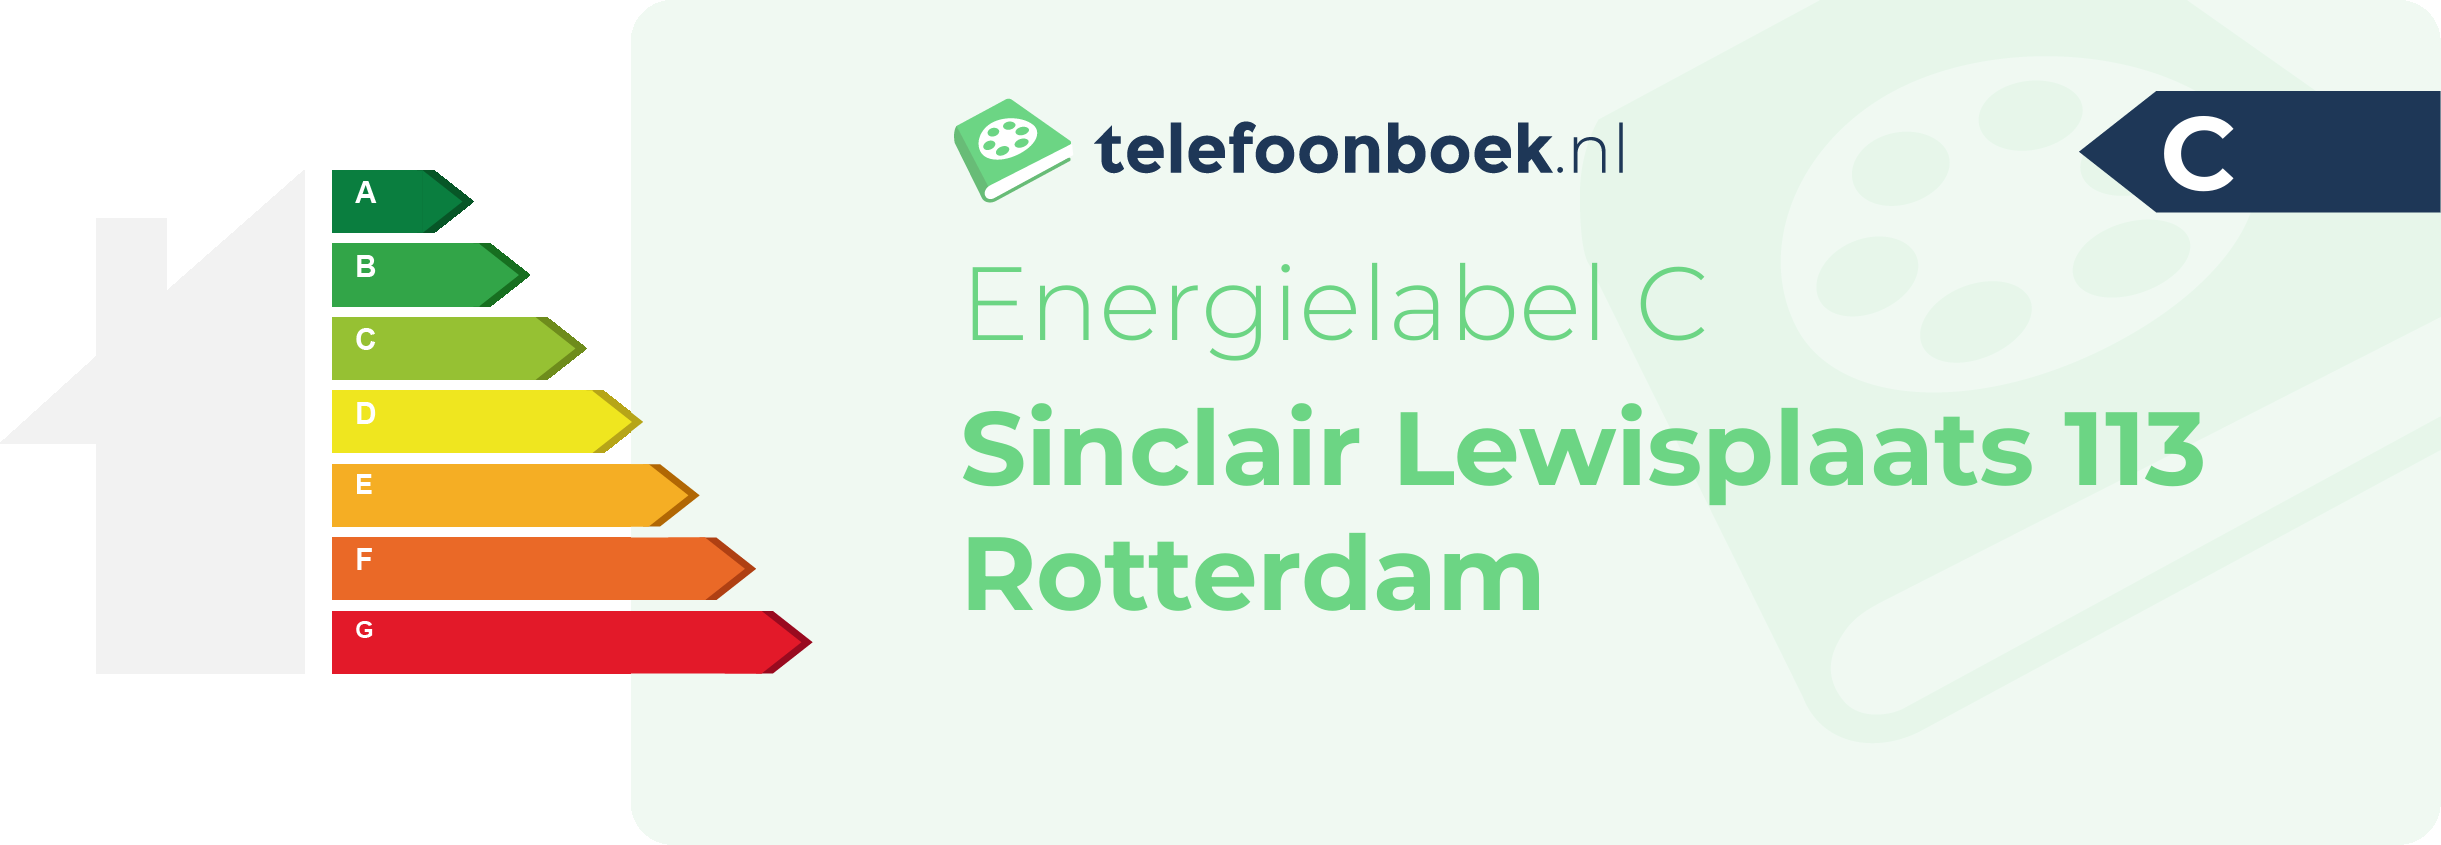 Energielabel Sinclair Lewisplaats 113 Rotterdam